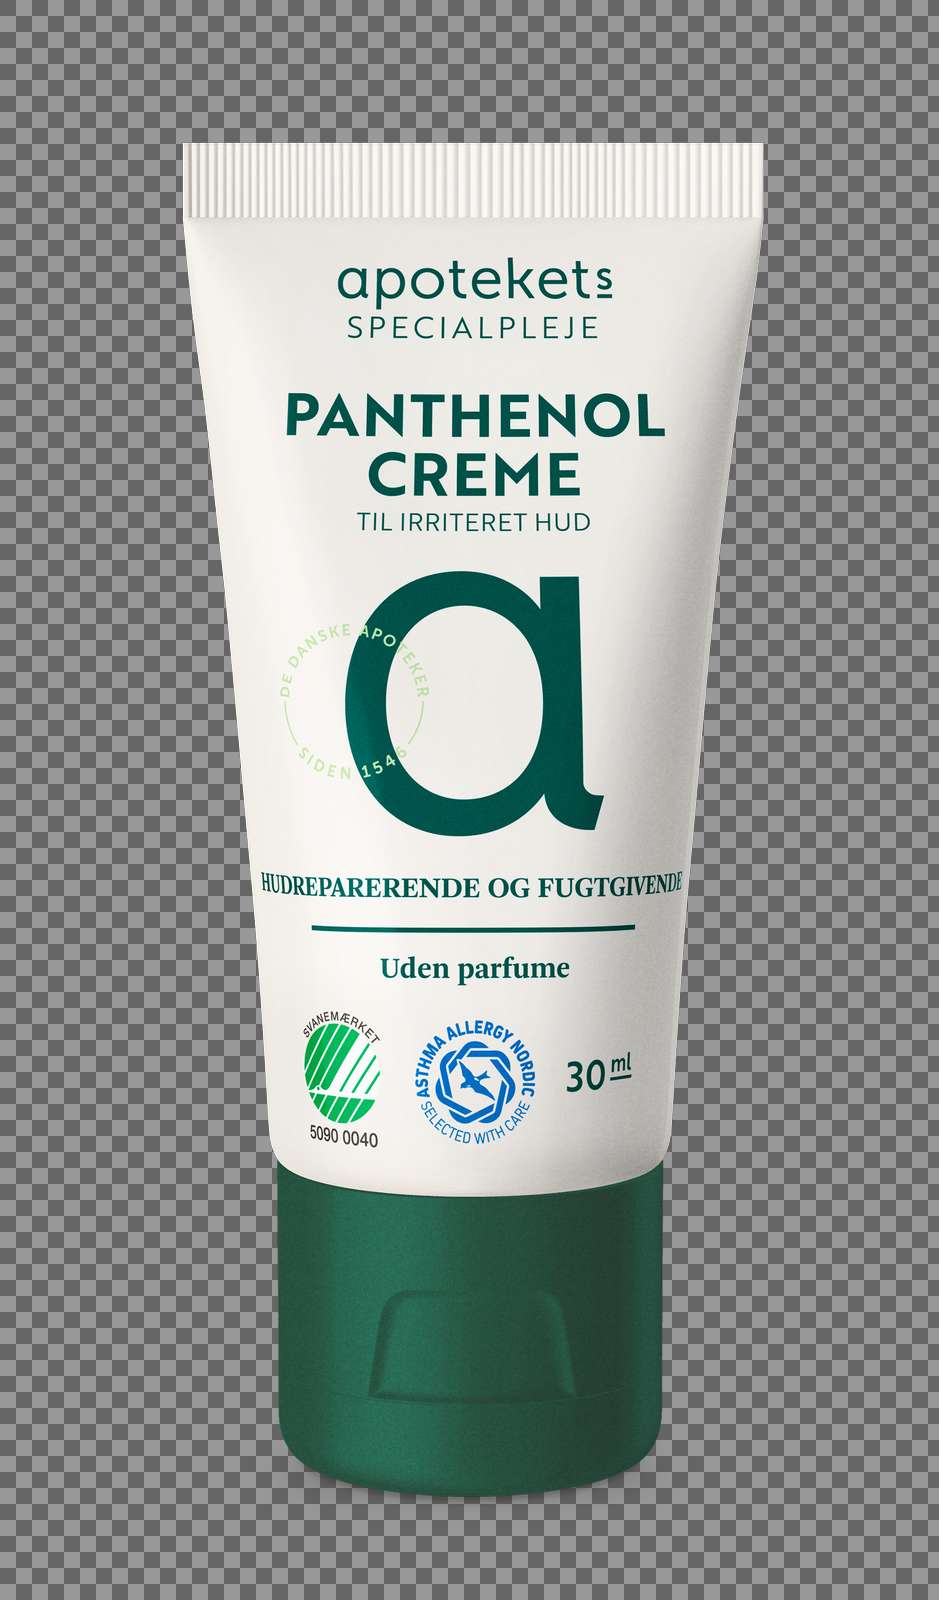 Panthenol-creme-30ml-apotekets.psd